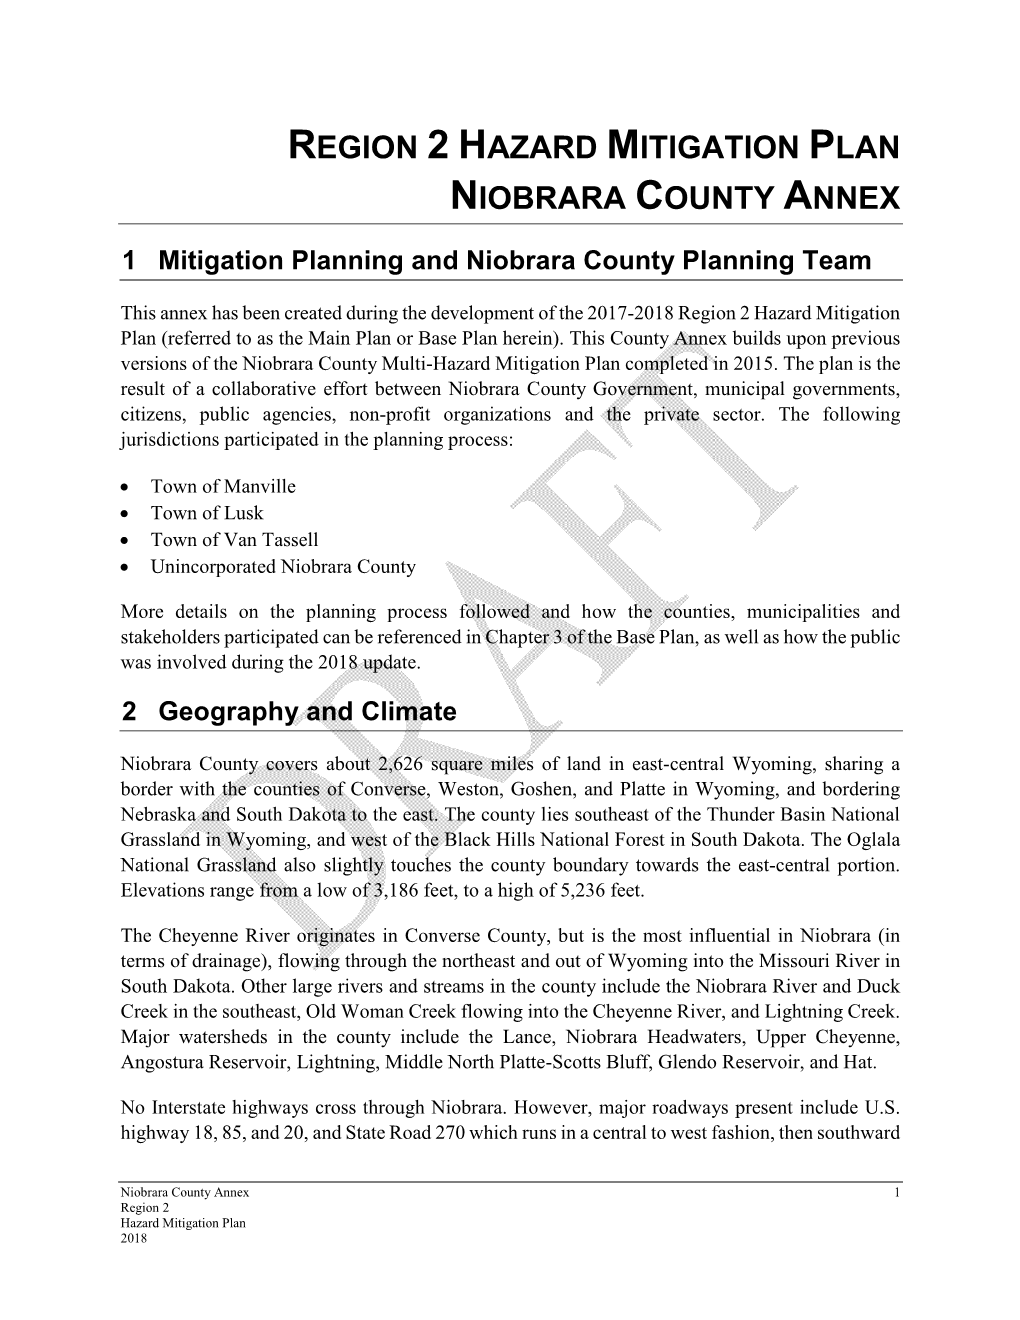 Region 2 Hazard Mitigation Plan Niobrara County Annex